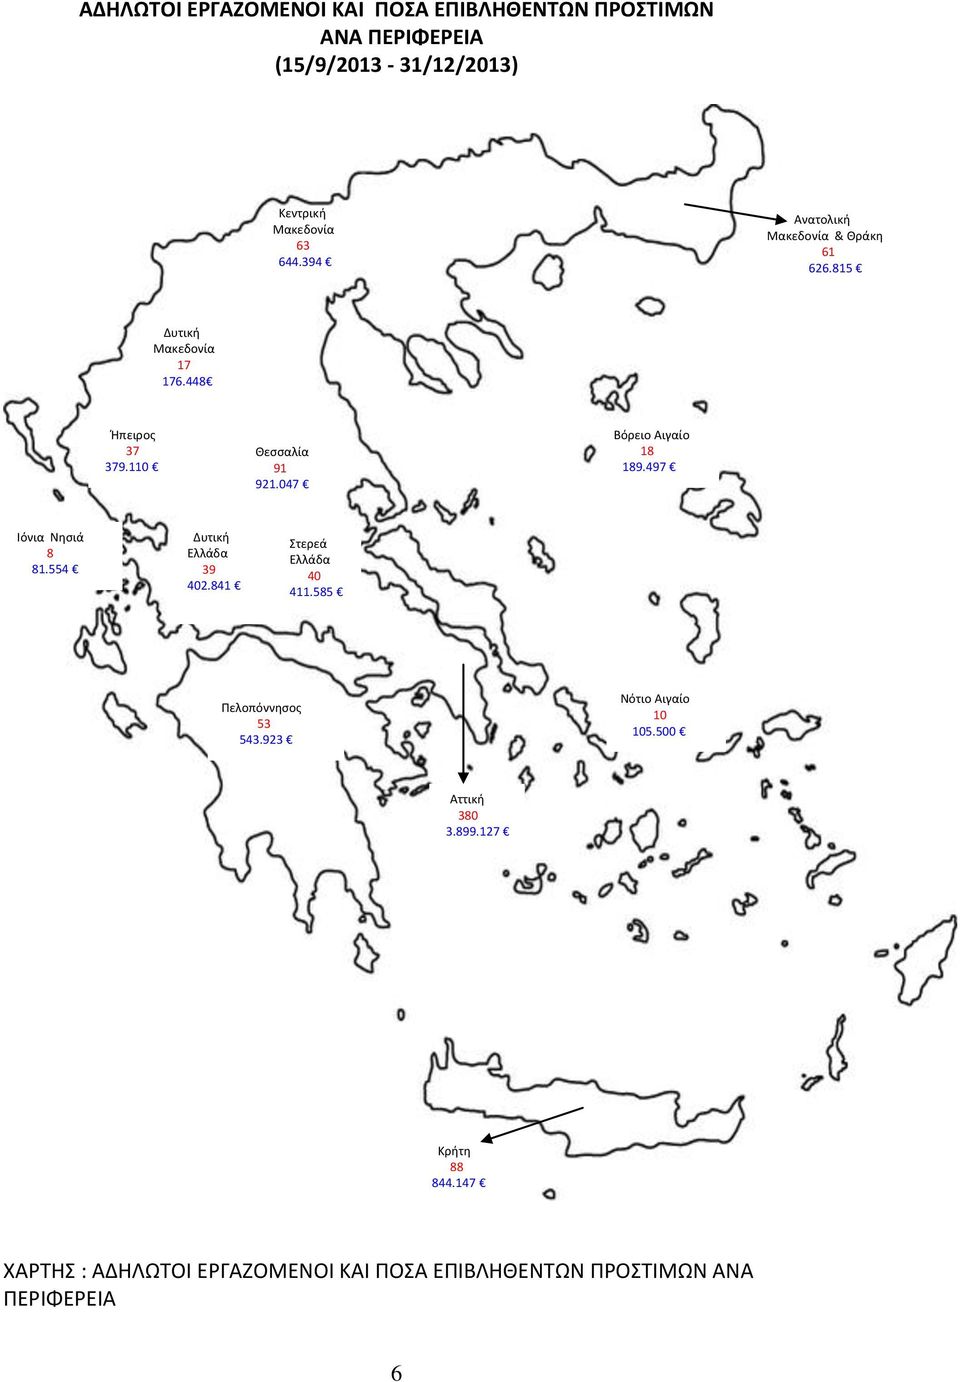 047 Βόρειο Αιγαίο 18 189.497 Ιόνια Νησιά 8 81.554 Δυτική Ελλάδα 39 402.841 Στερεά Ελλάδα 40 411.585 Πελοπόννησος 53 543.